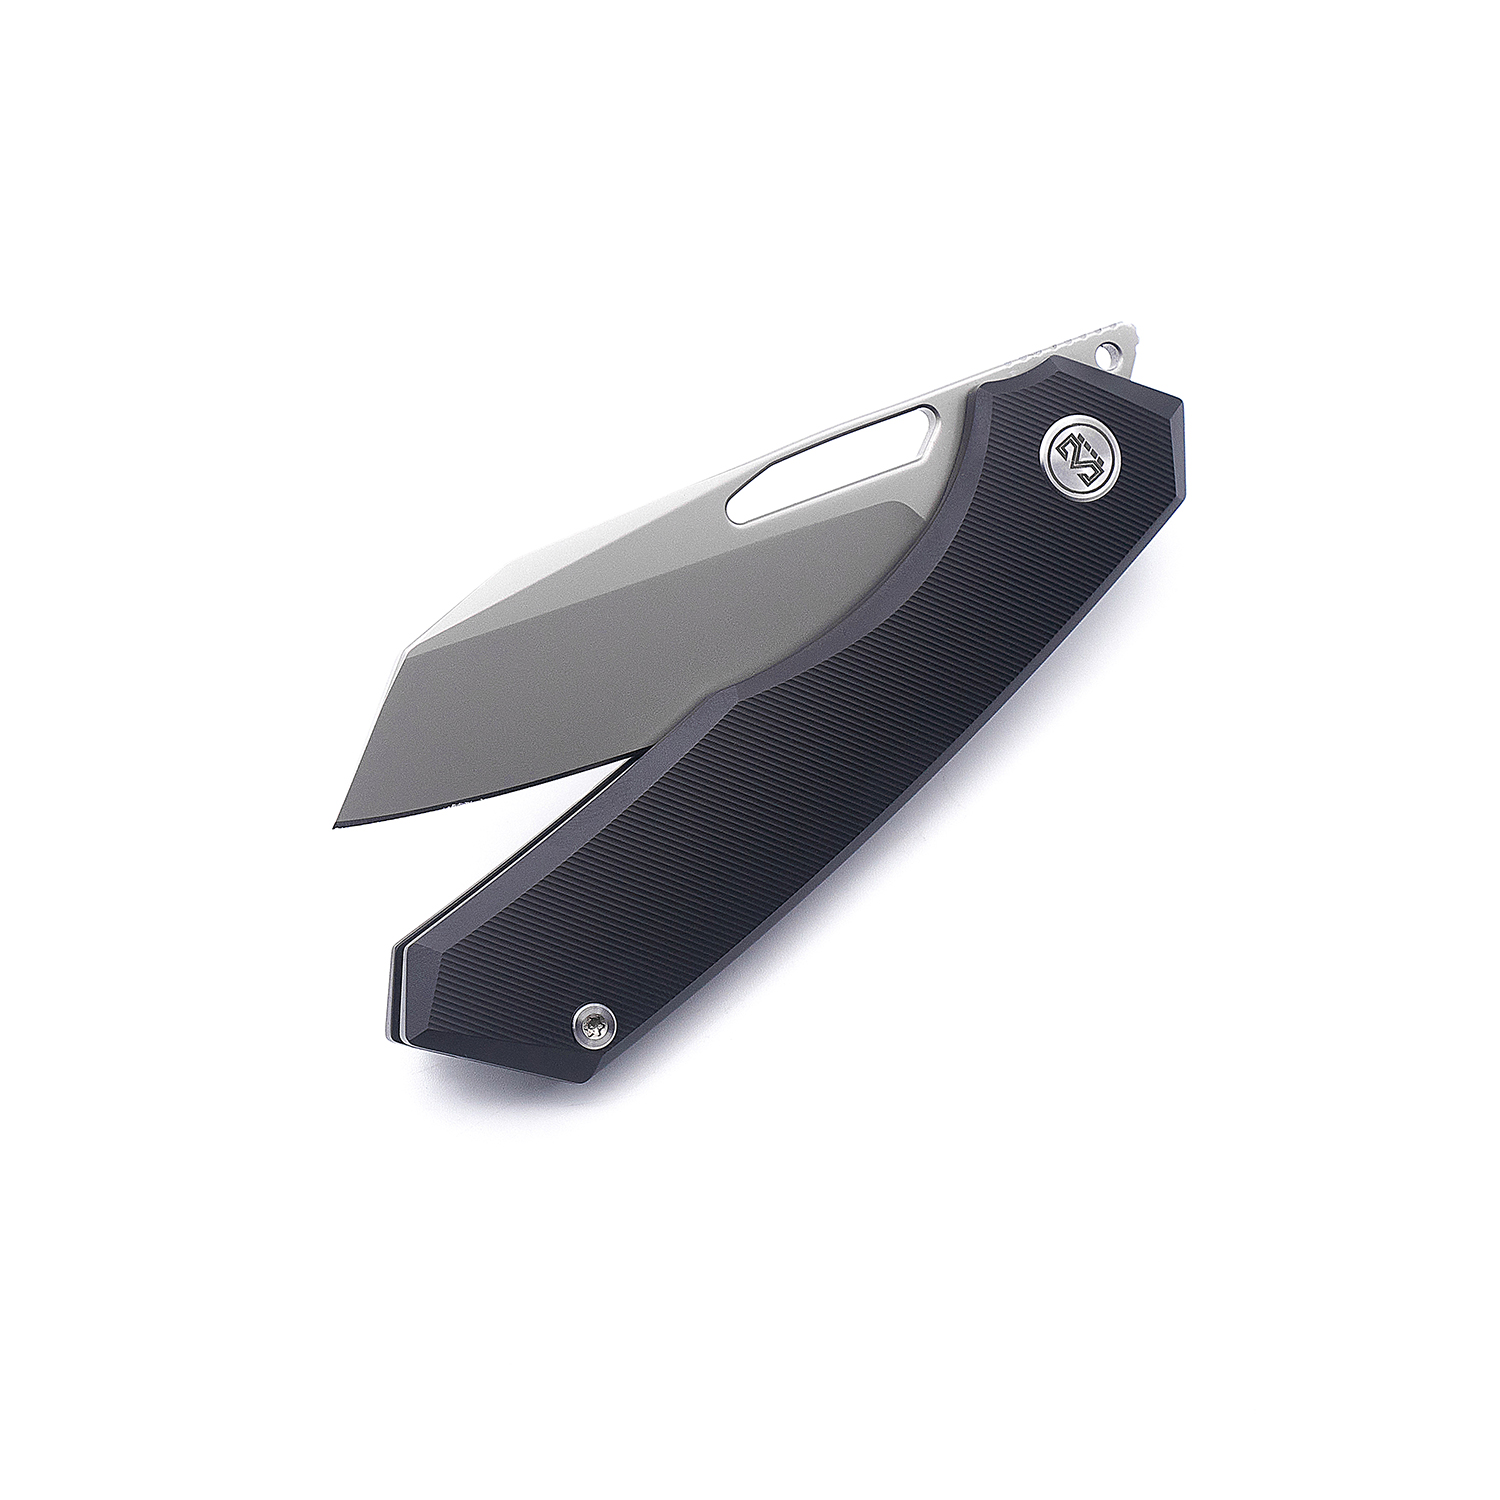 Miguron Knives Keryx II Front Flipper Folding Knife 3.25